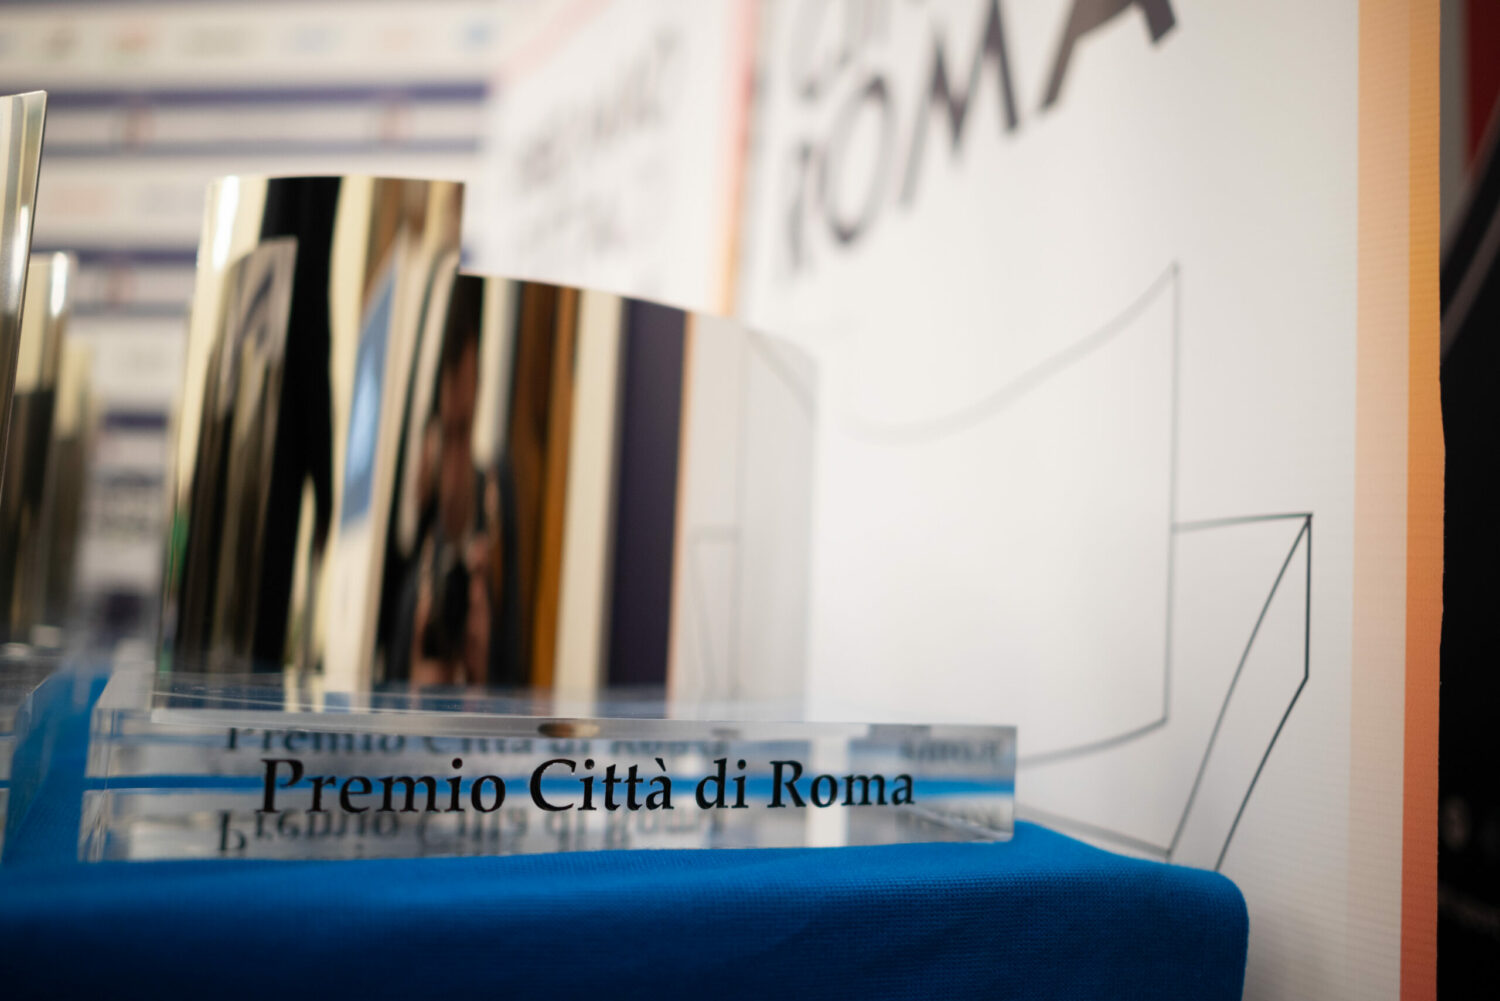 Scopri di più sull'articolo Premio Città di Roma: il 18 aprile gli uffici rimarranno chiusi fino alle ore 16:00